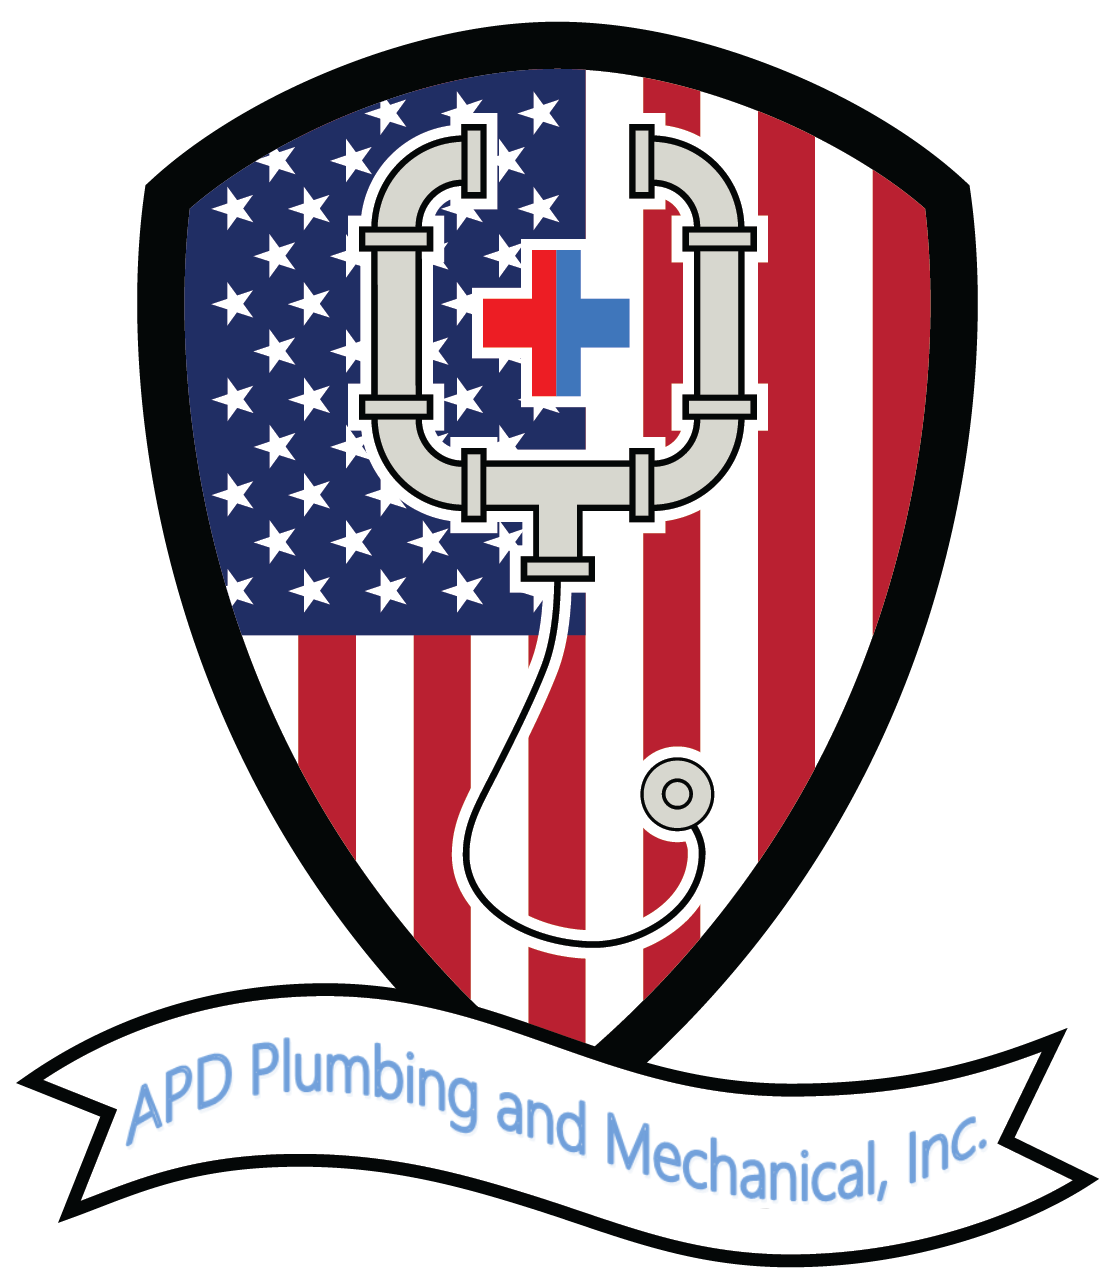 APD Plumbing and Mechanical, Inc. Logo